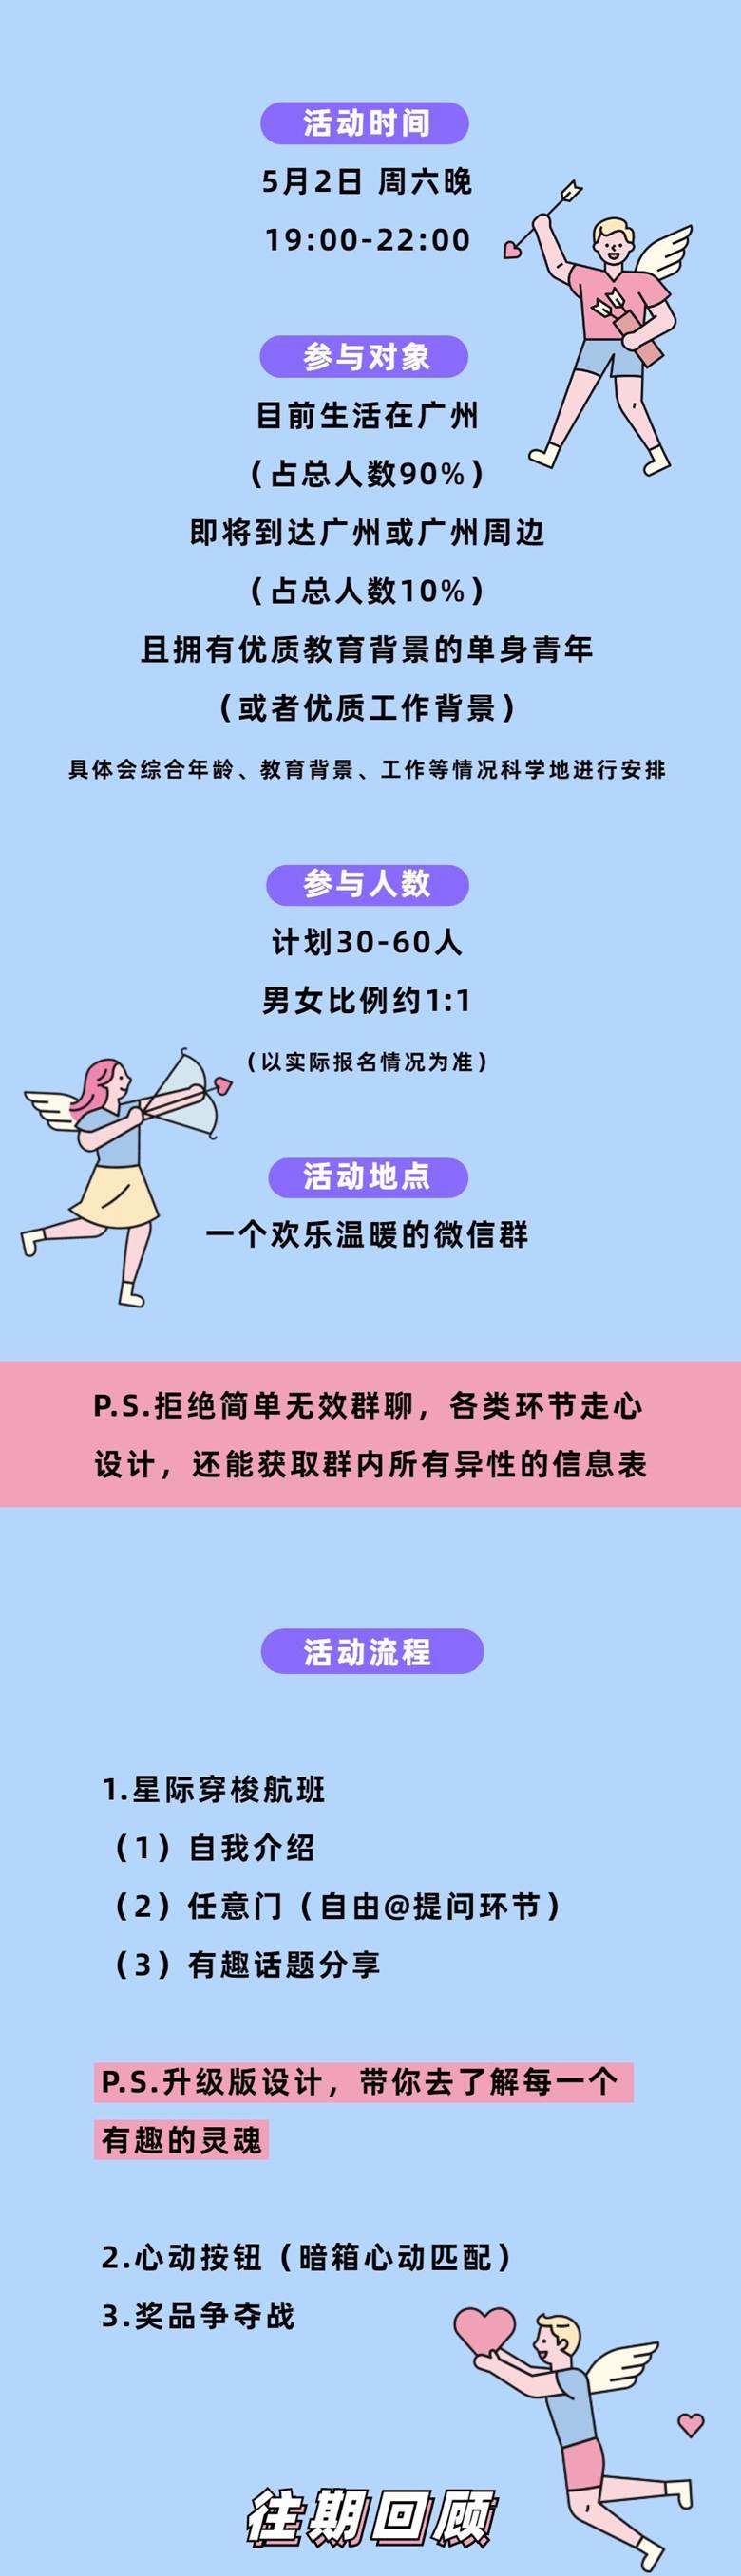 广州线上 脱单活动 优质青年专场 优质教育 工作背景 优化版 5月2日 让我带你遇见粉红色的心动 精彩城市生活 尽在活动行